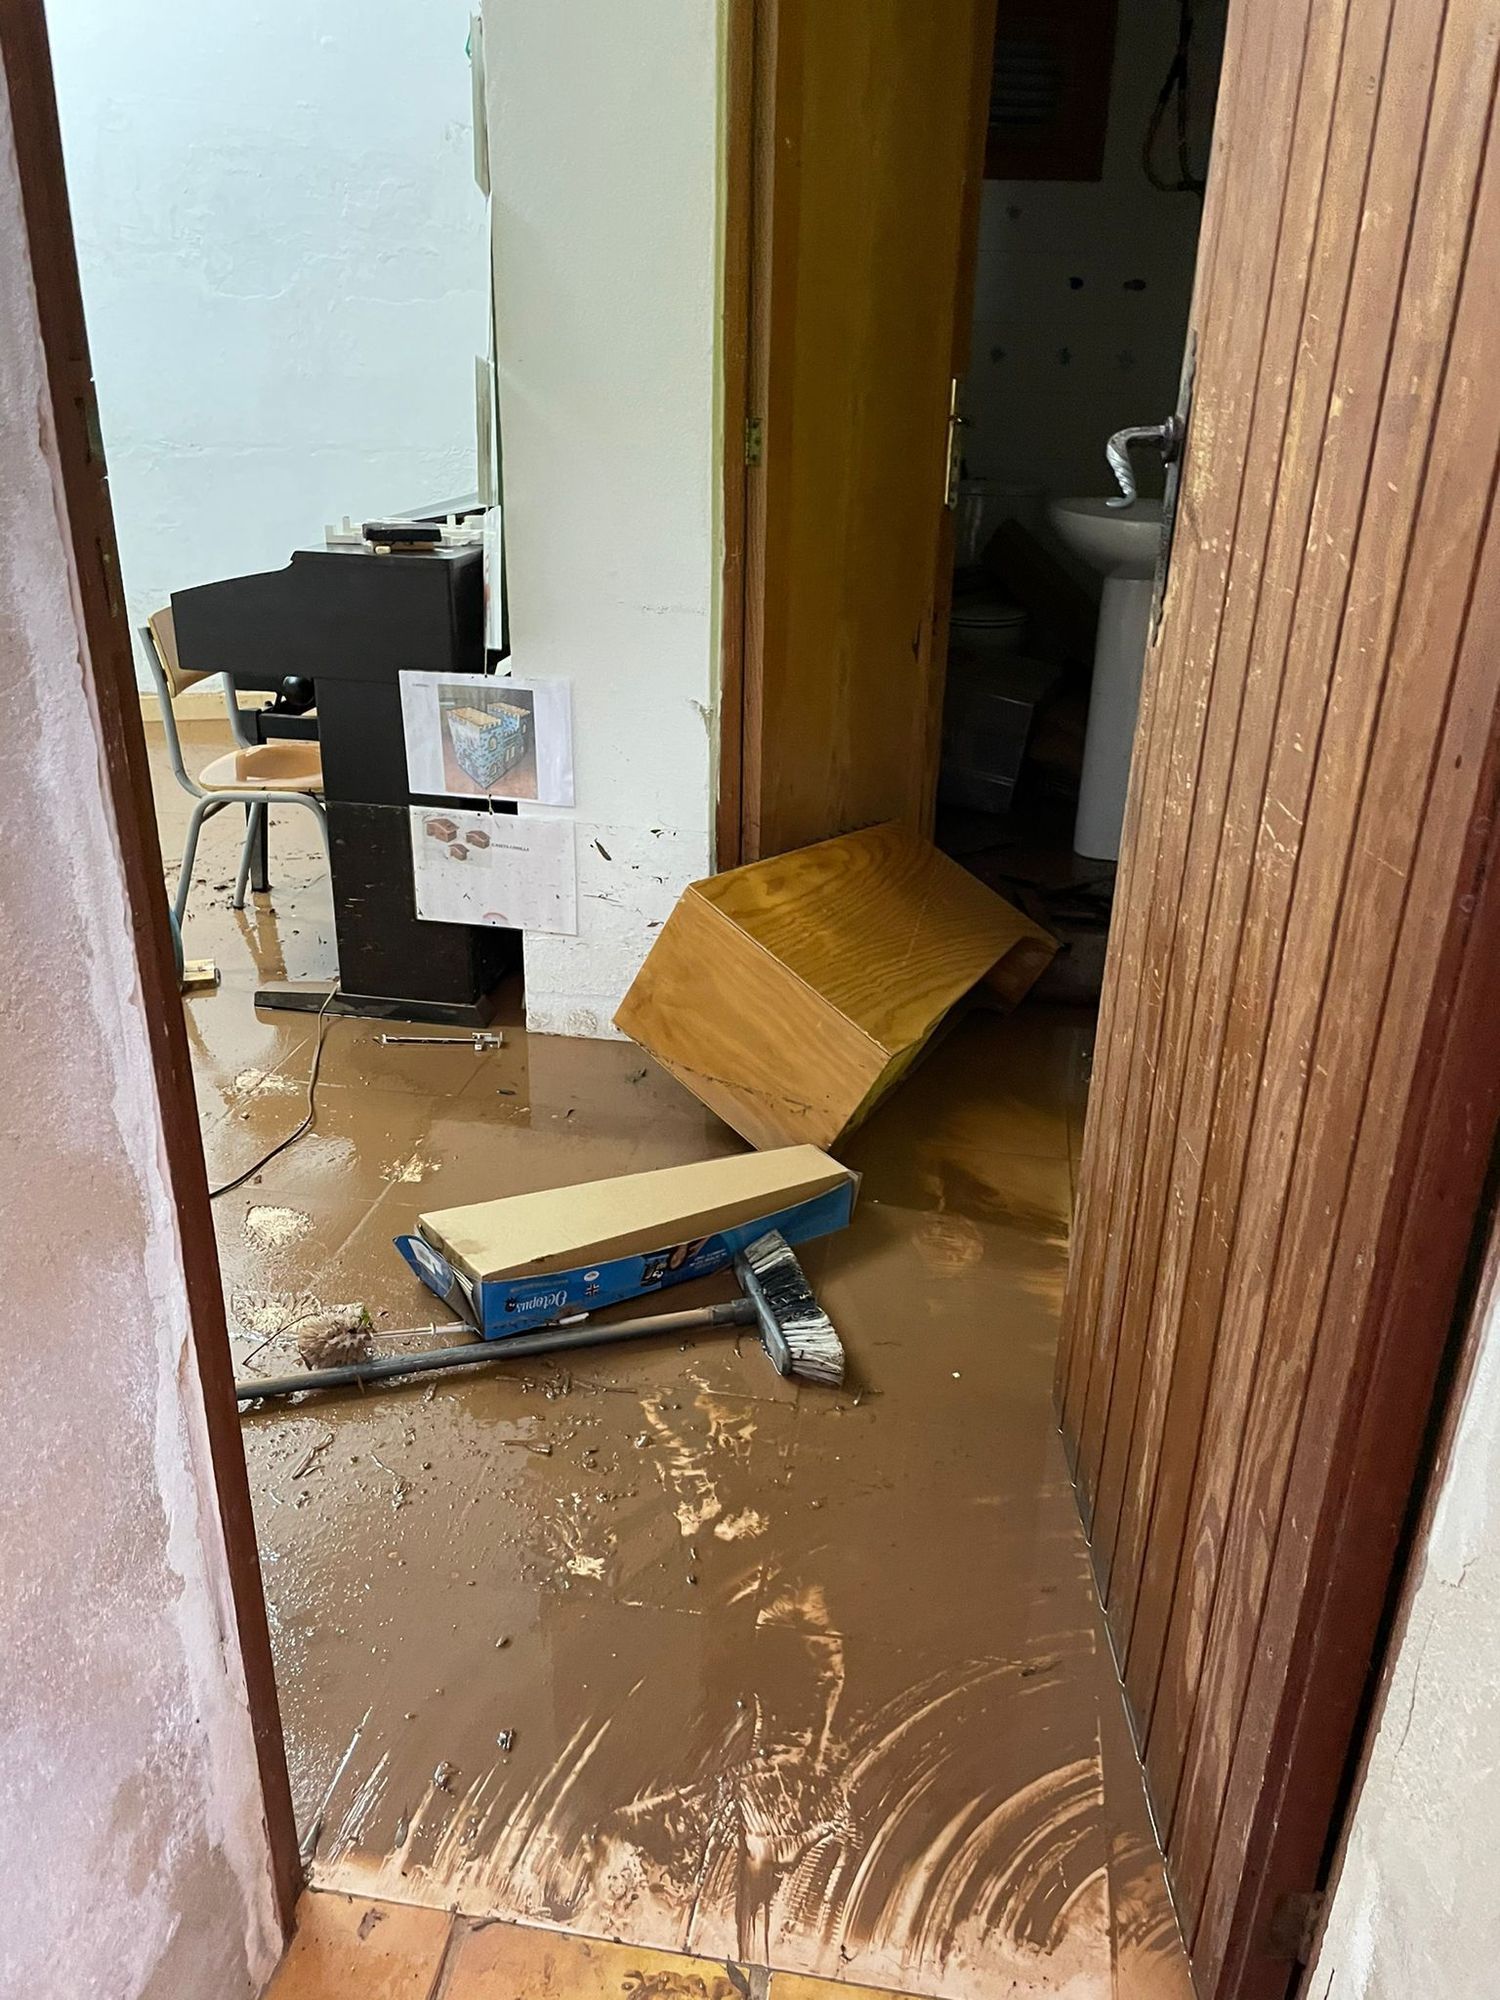 Blas wütet auf Mallorca: Überschwemmungen, Erdrutsche und überflutete Straßen in Fornalutx und Sóller